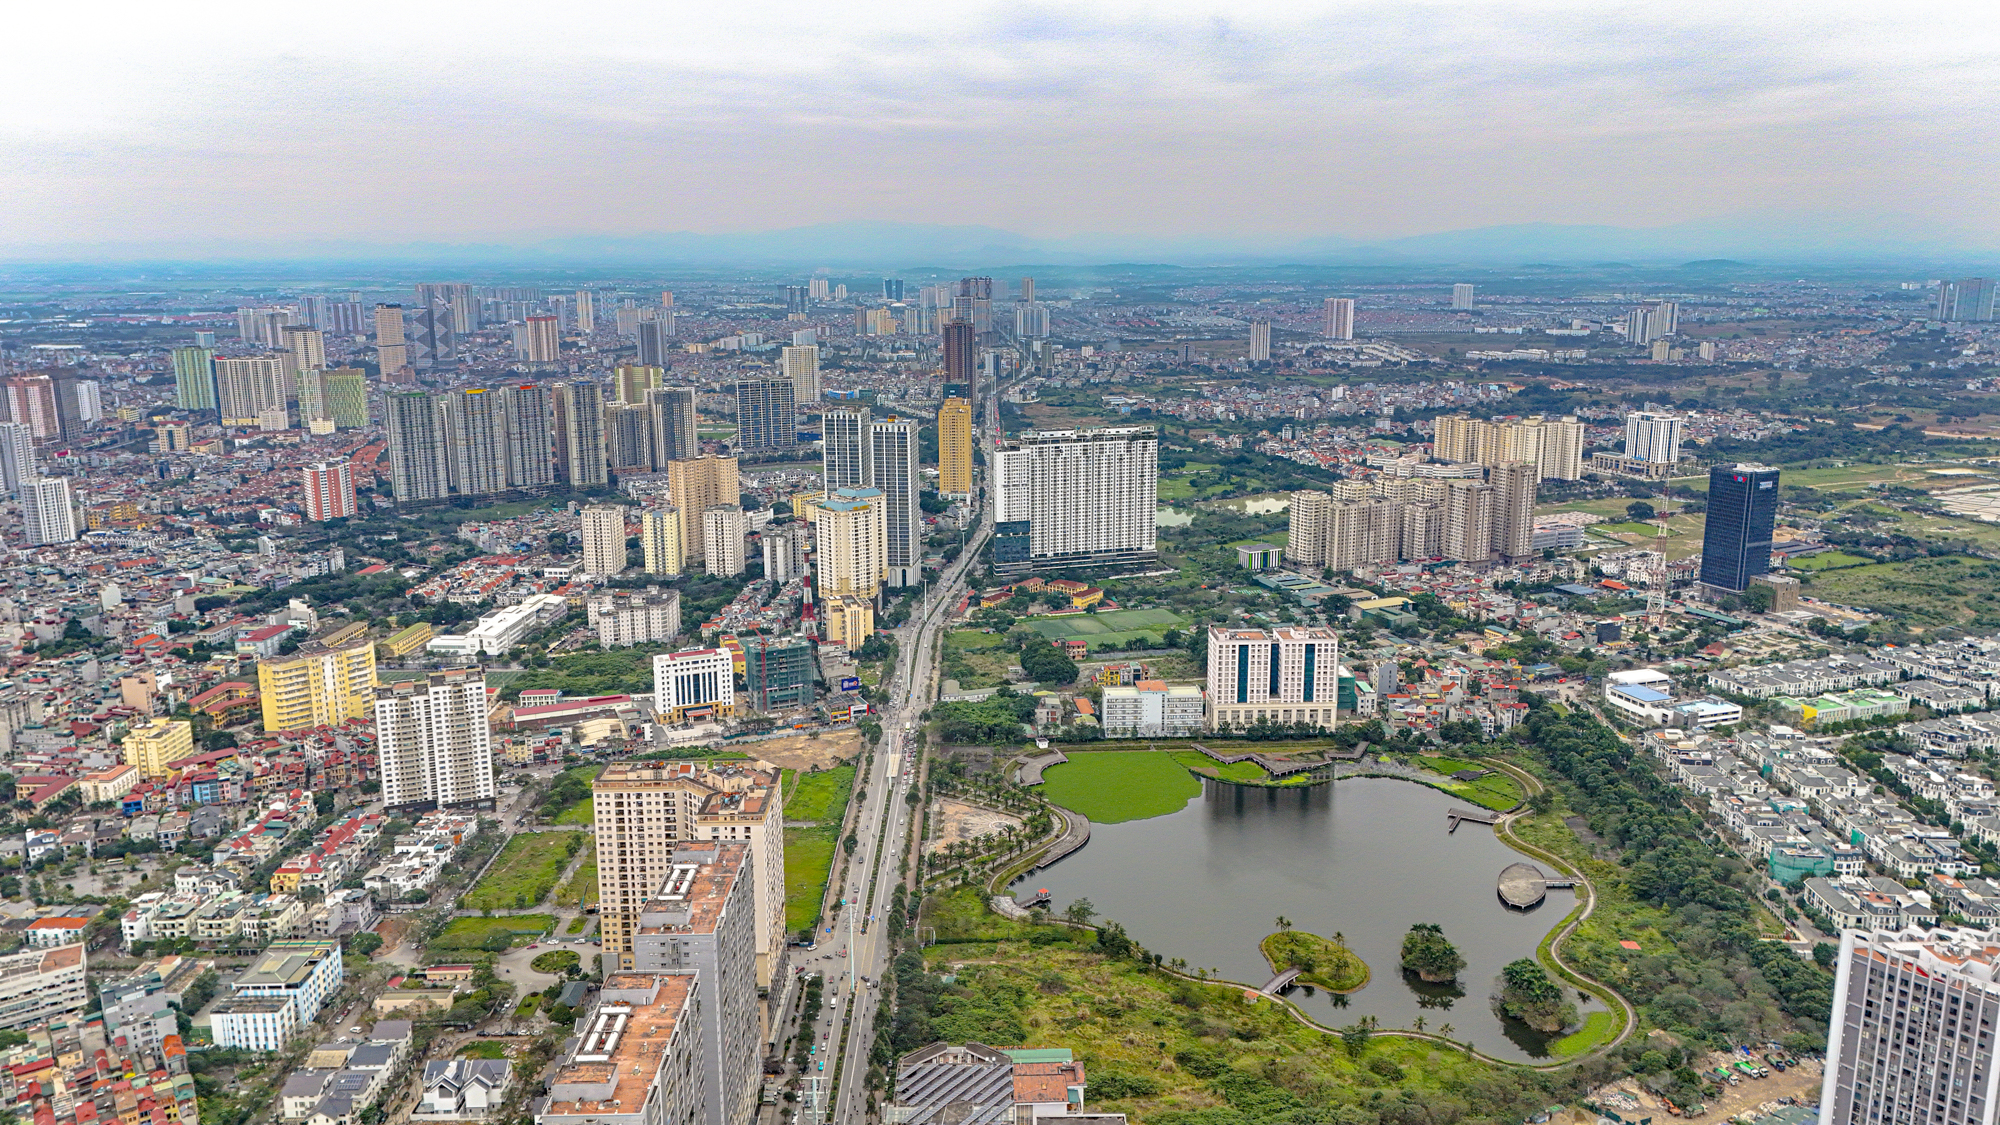 Cảnh “rừng căn hộ” mọc san sát tại thành phố có nhiều nhà cao tầng nhất Việt Nam- Ảnh 4.